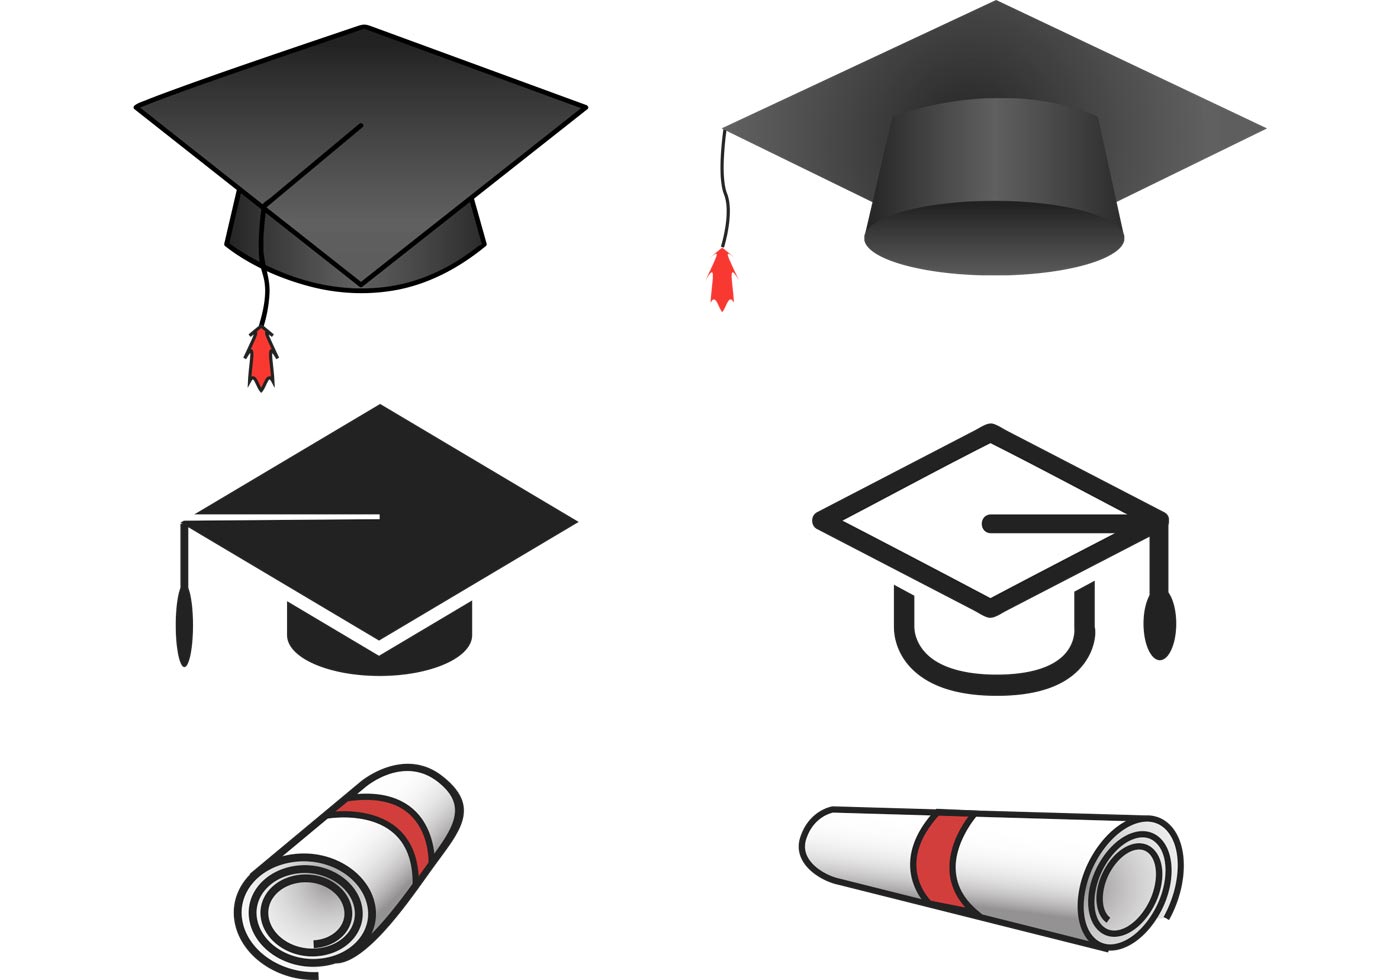 Download Graduation Vectors - Download Free Vectors, Clipart Graphics & Vector Art